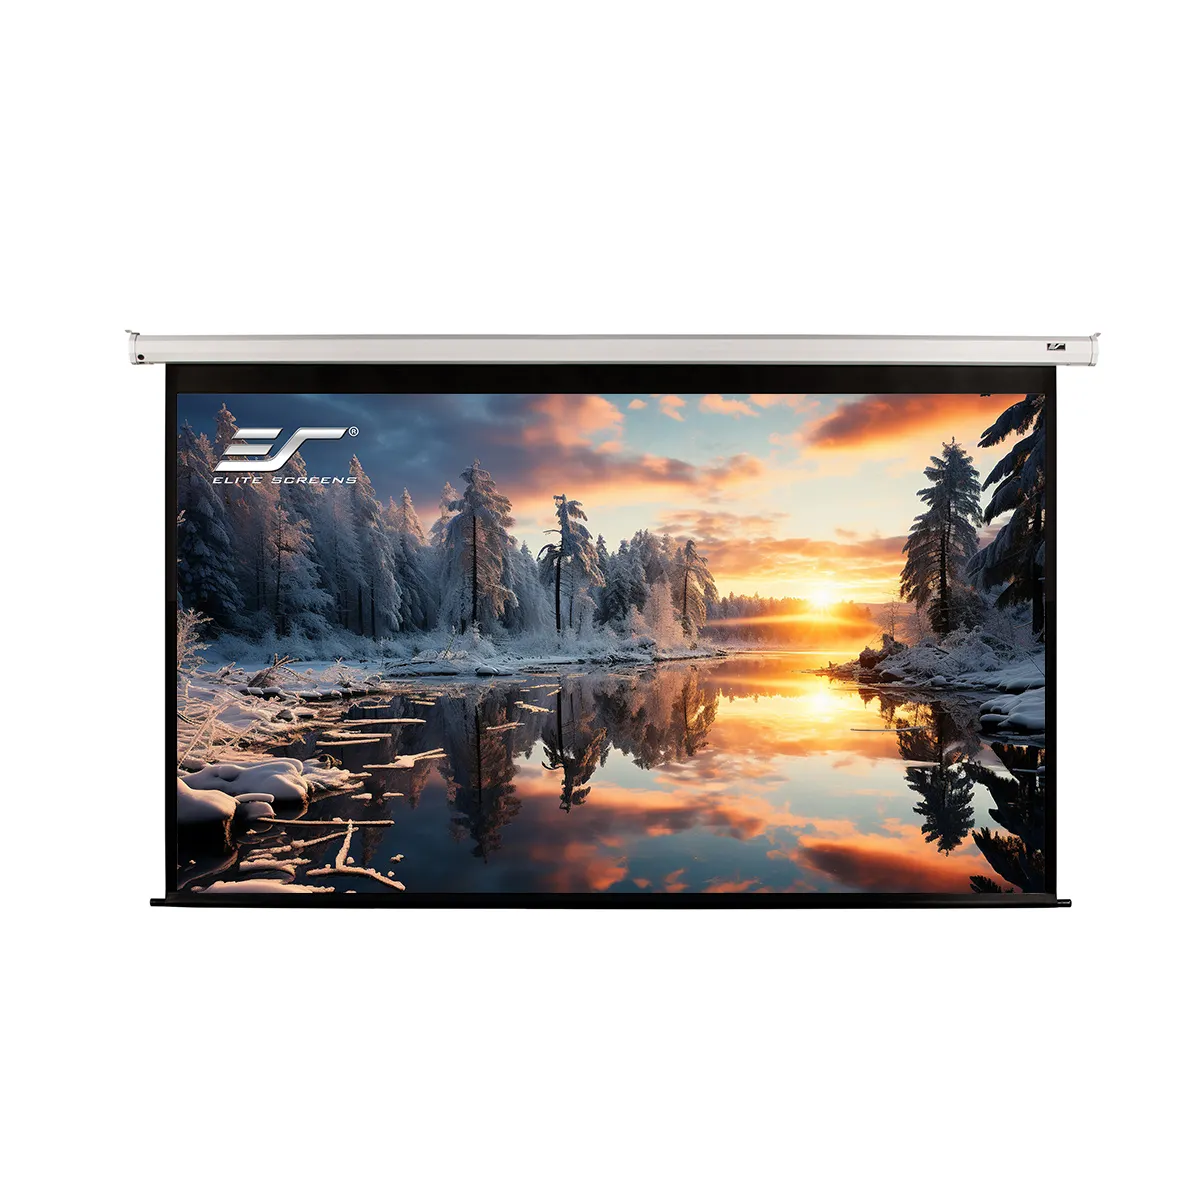 Elite ekranlar projeksiyon perdesi elektronik motorlu projektör için 135 inç beyaz ekran yukarı çekin